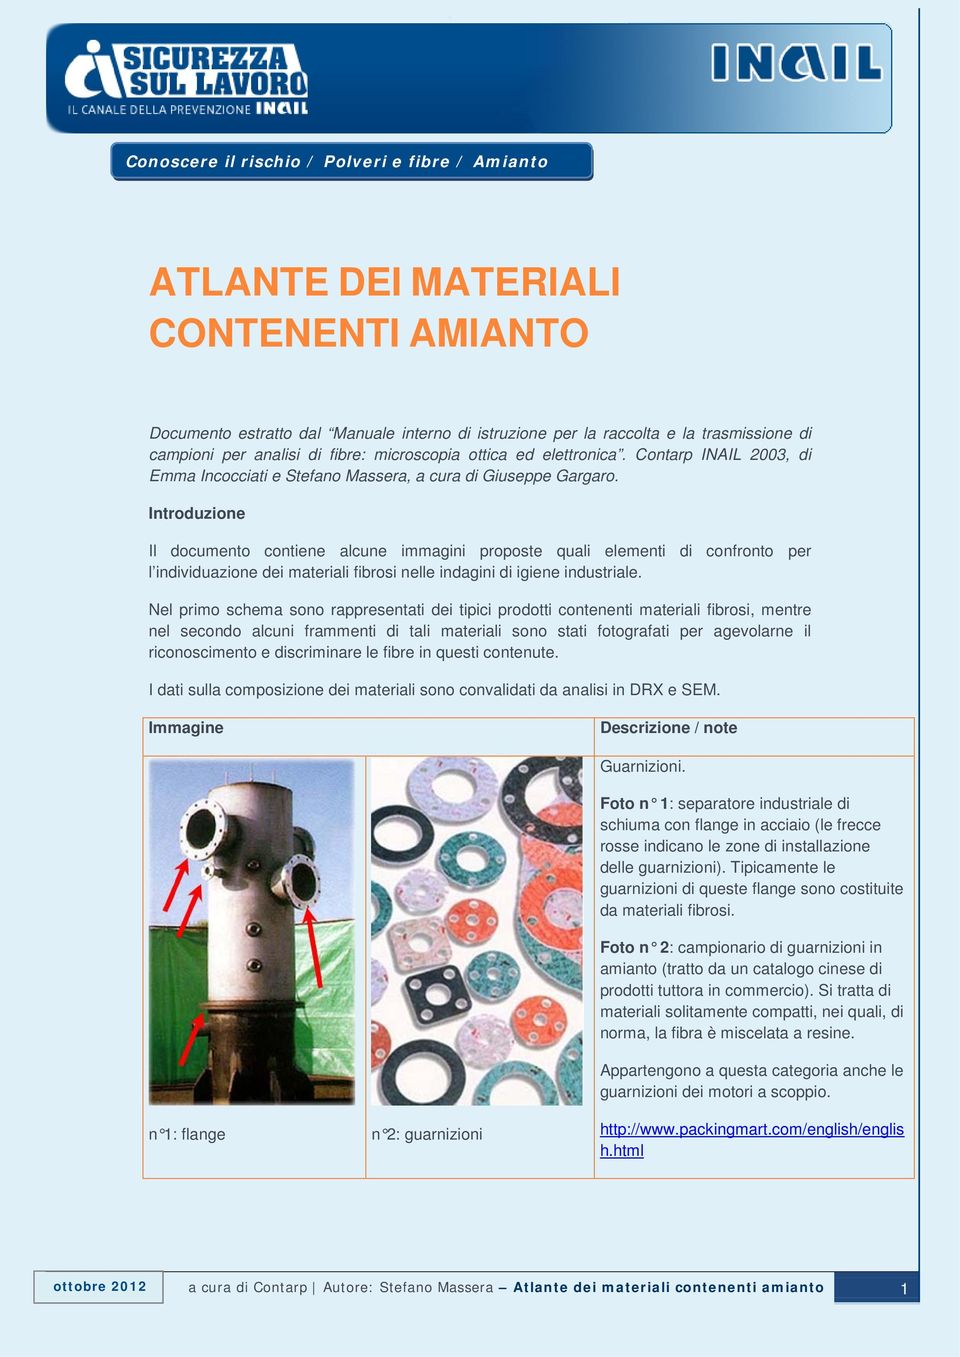 Introduzione Il documento contiene alcune immagini proposte quali elementi di confronto per l individuazione dei materiali fibrosi nelle indagini di igiene industriale.